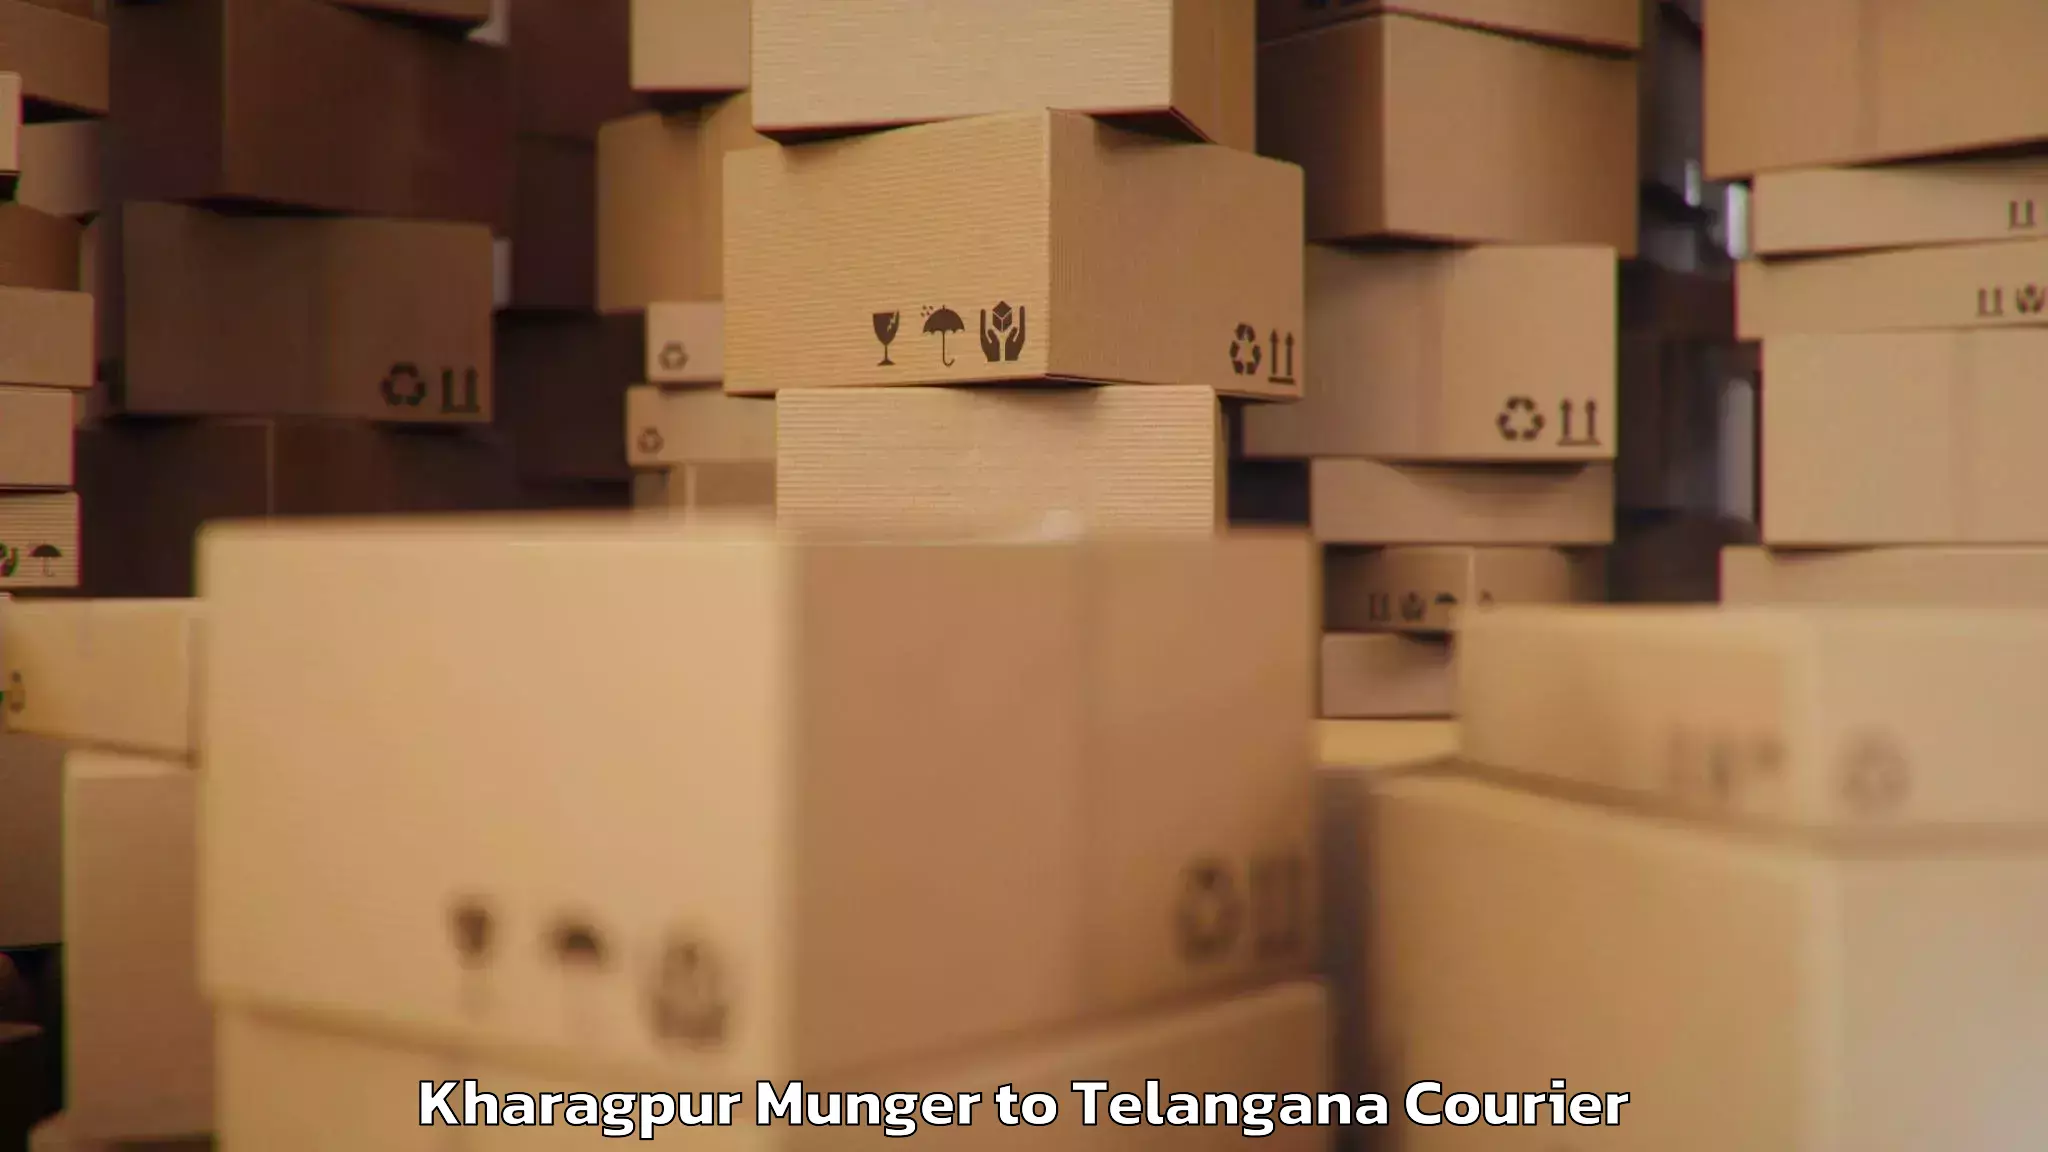 Luggage shipment specialists Kharagpur Munger to Adilabad